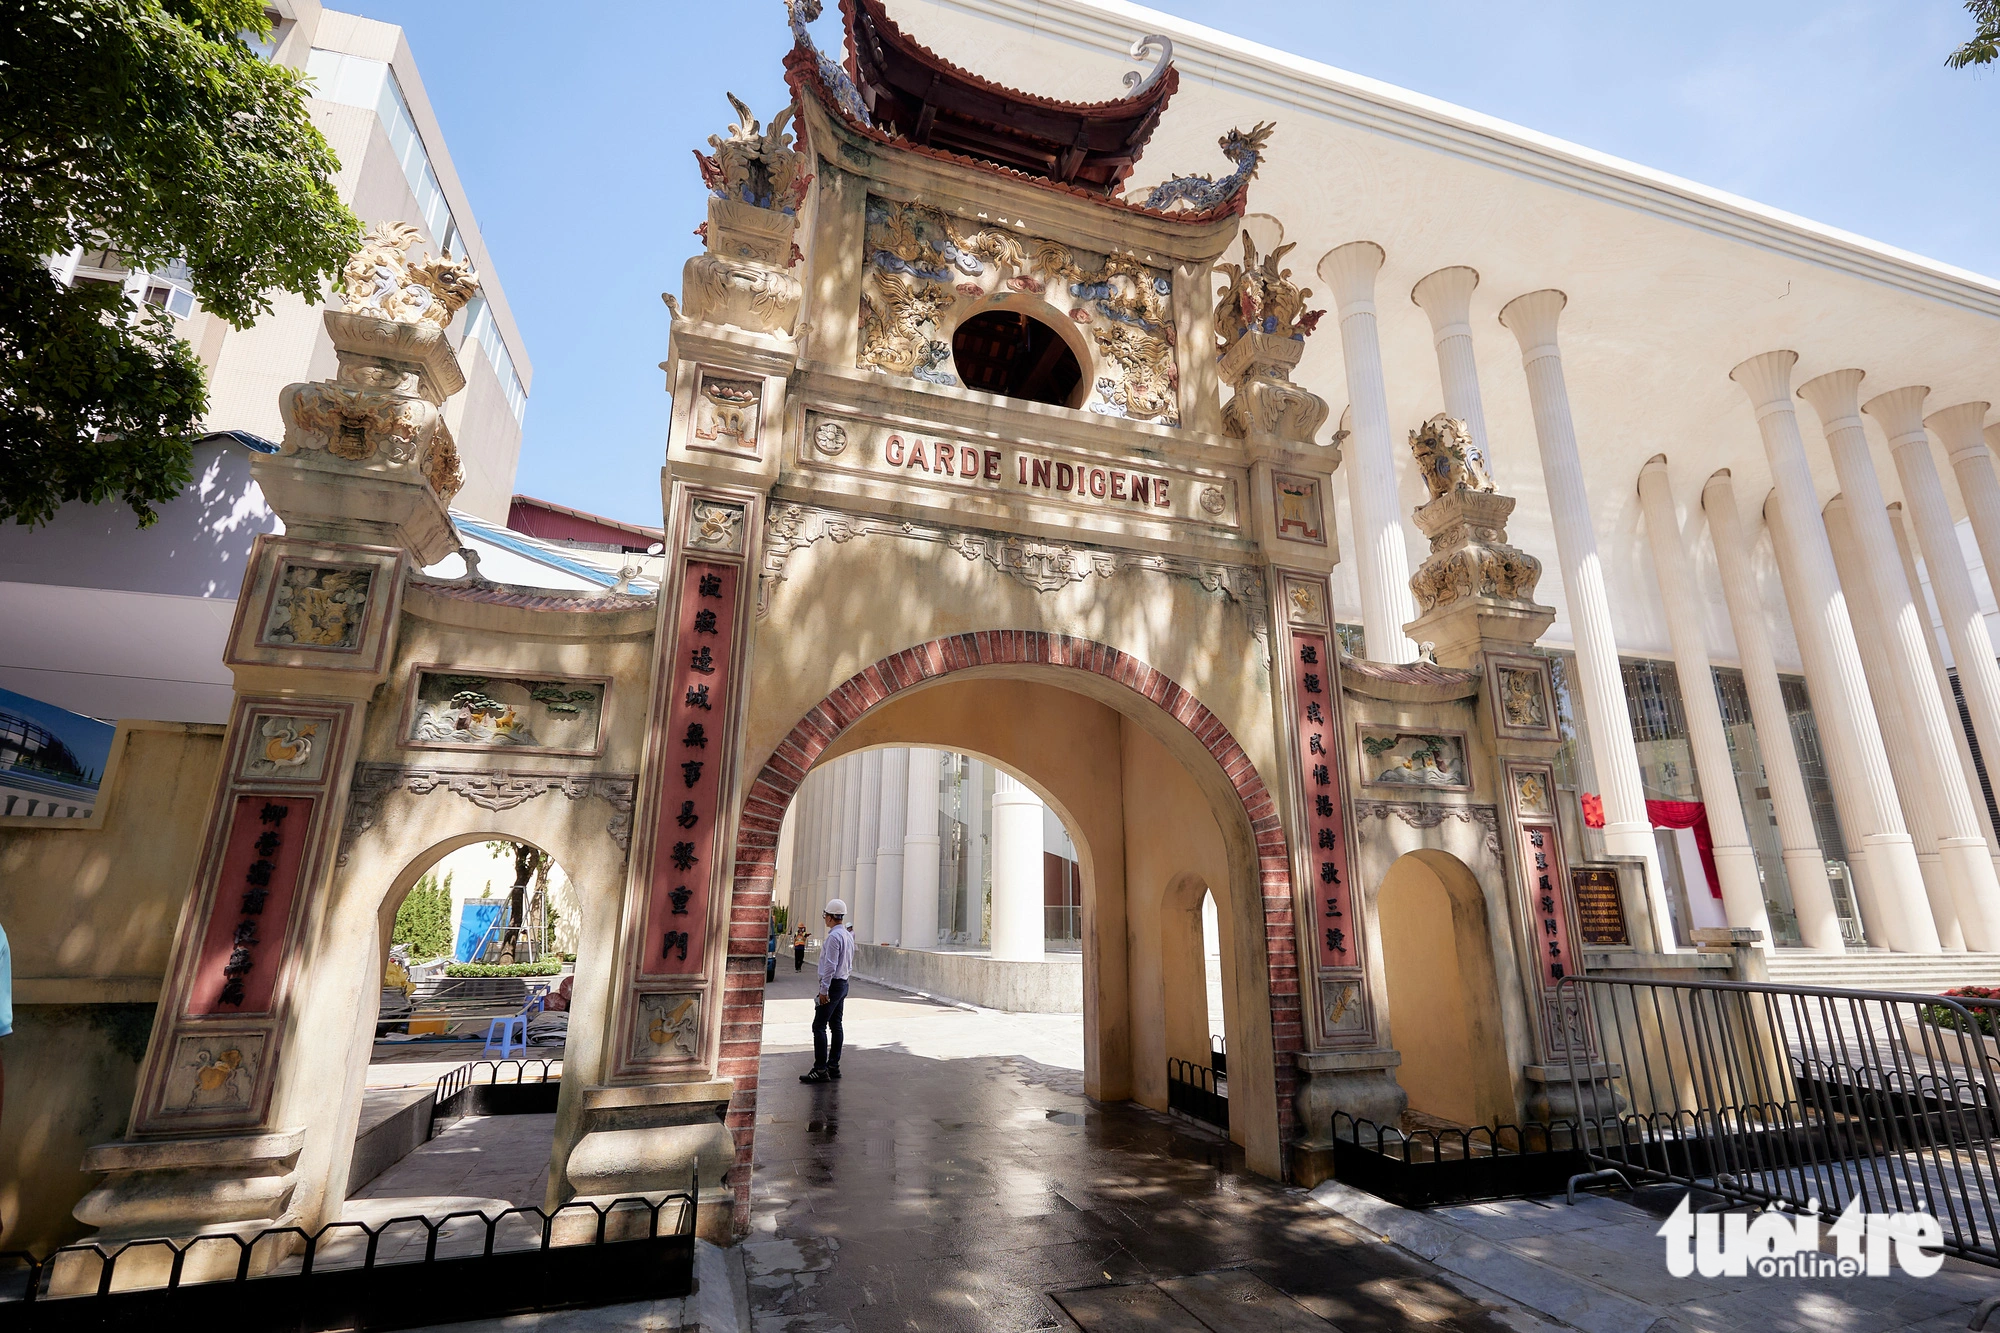 Khi xây dựng nhà hát, các kiến trúc sư tinh tế giữ lại chiếc cổng cổ kính dẫn vào công trình cũ, trên tường còn gắn biến địa danh lịch sử - Ảnh: MINH KHÁNH